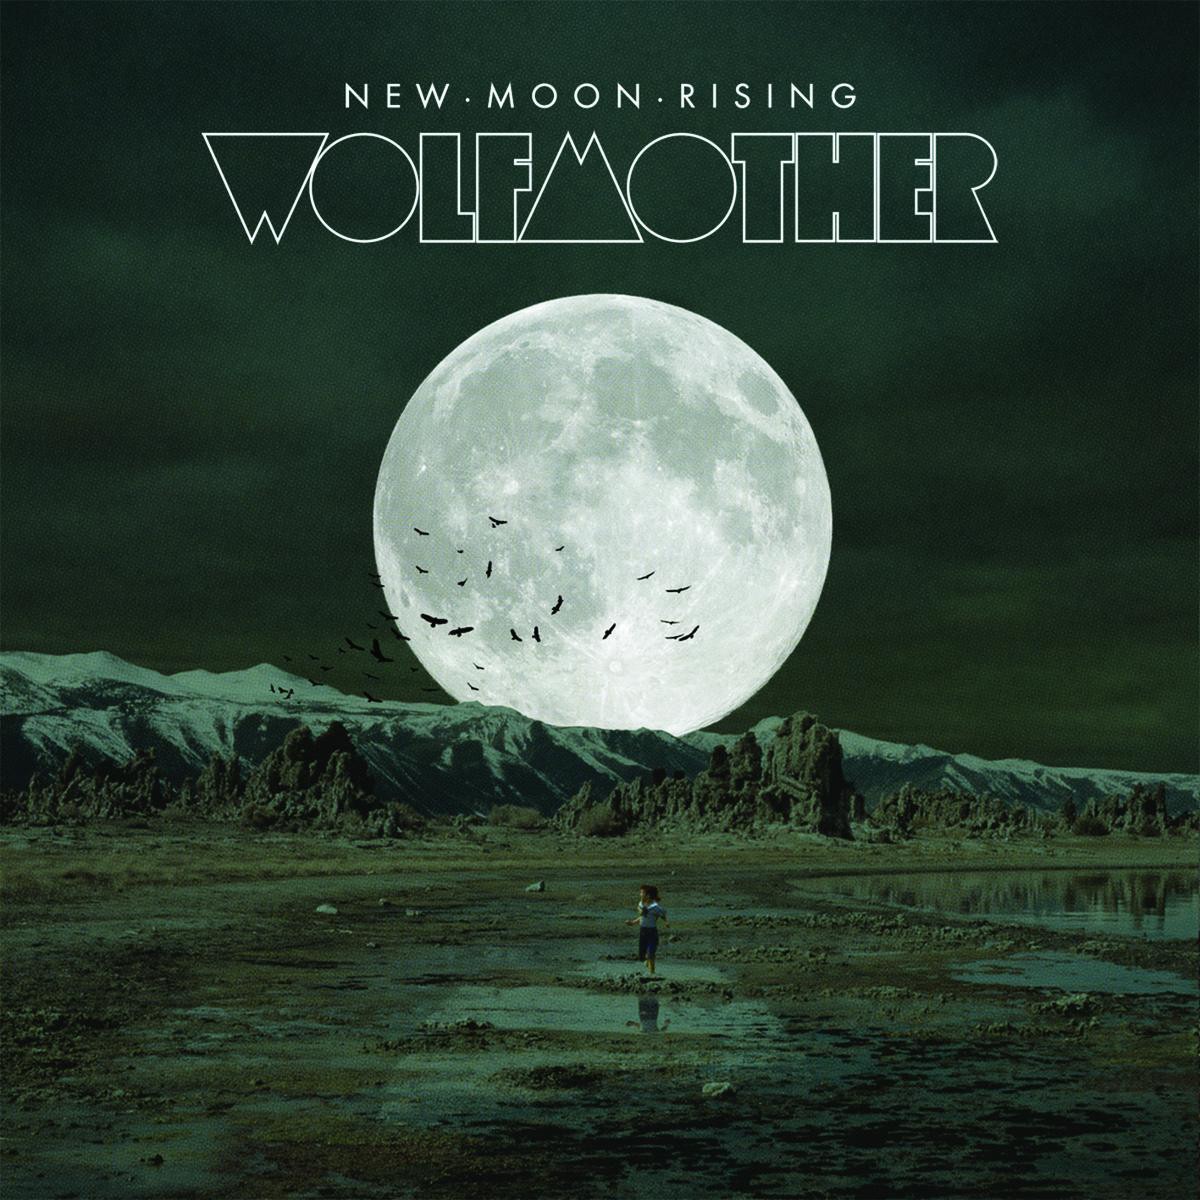 New Moon Rising - Riton Club Rub